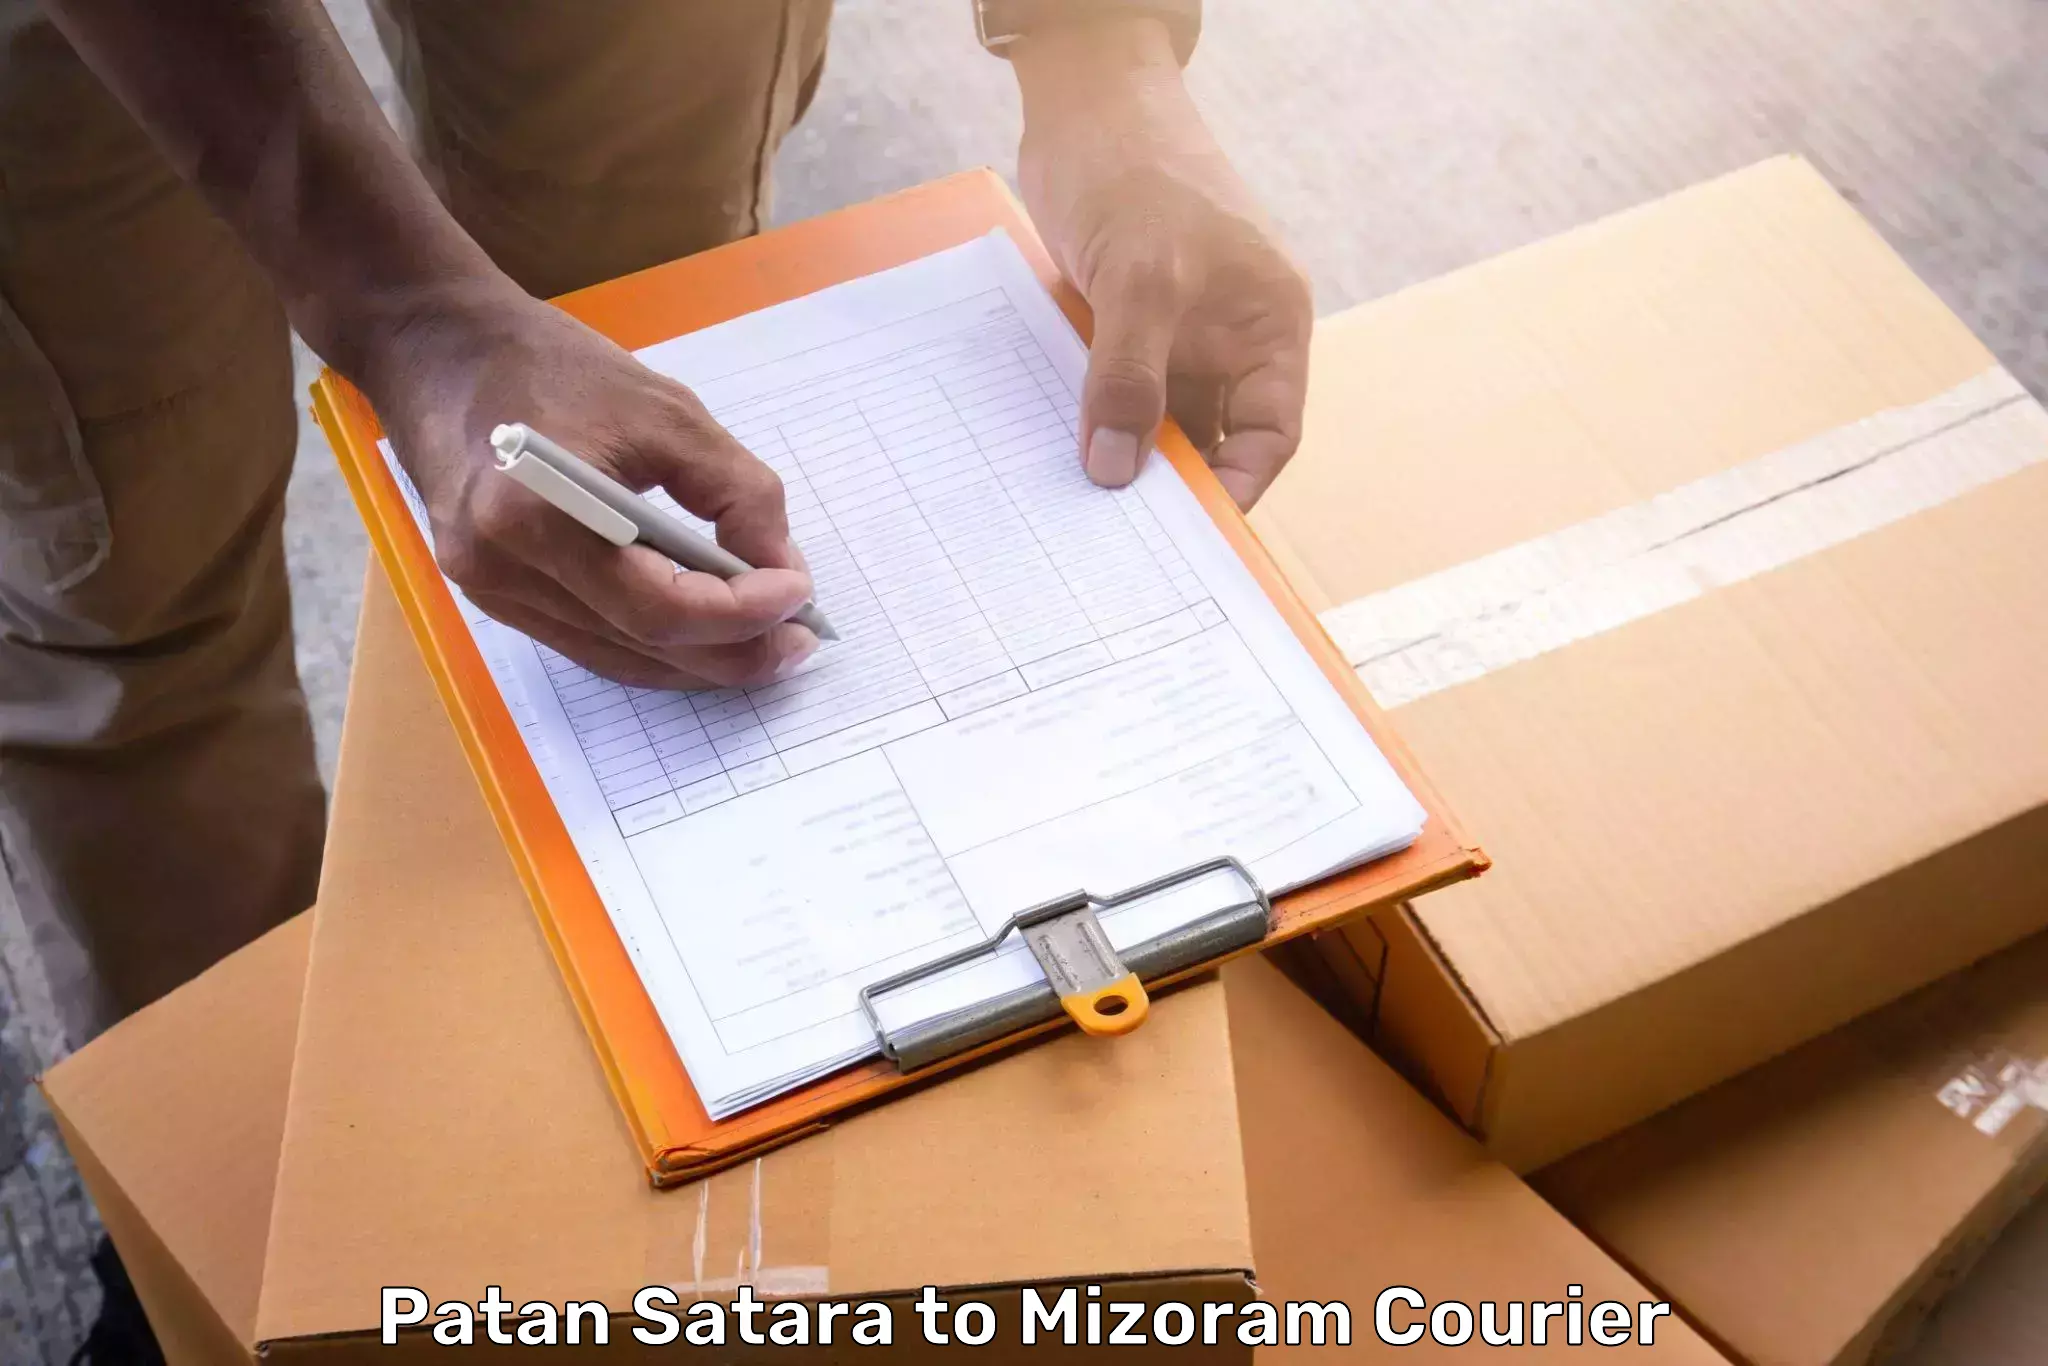 Luggage delivery app Patan Satara to Mizoram